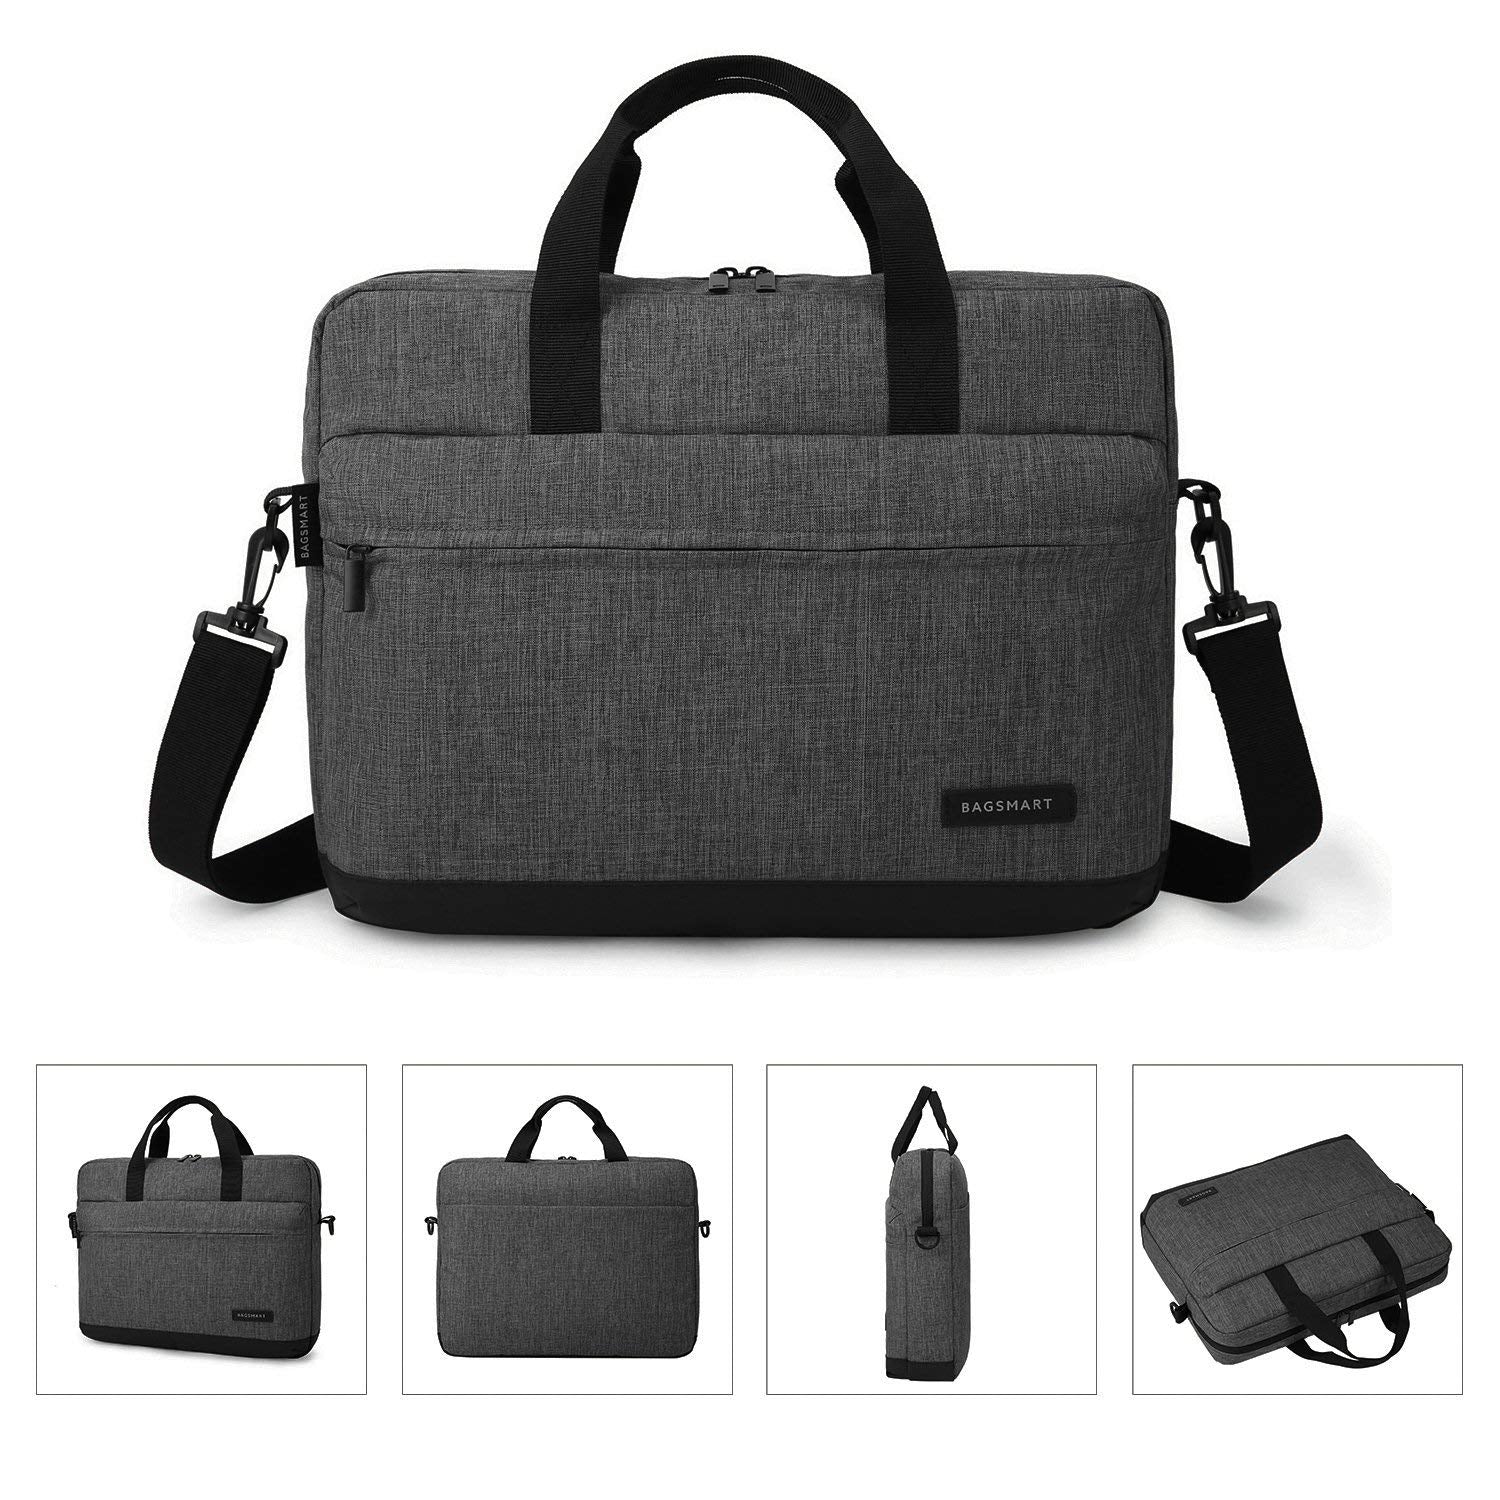 15.6 inch Minimalist Laptop Bag by Bagsmart | yrGear Australia